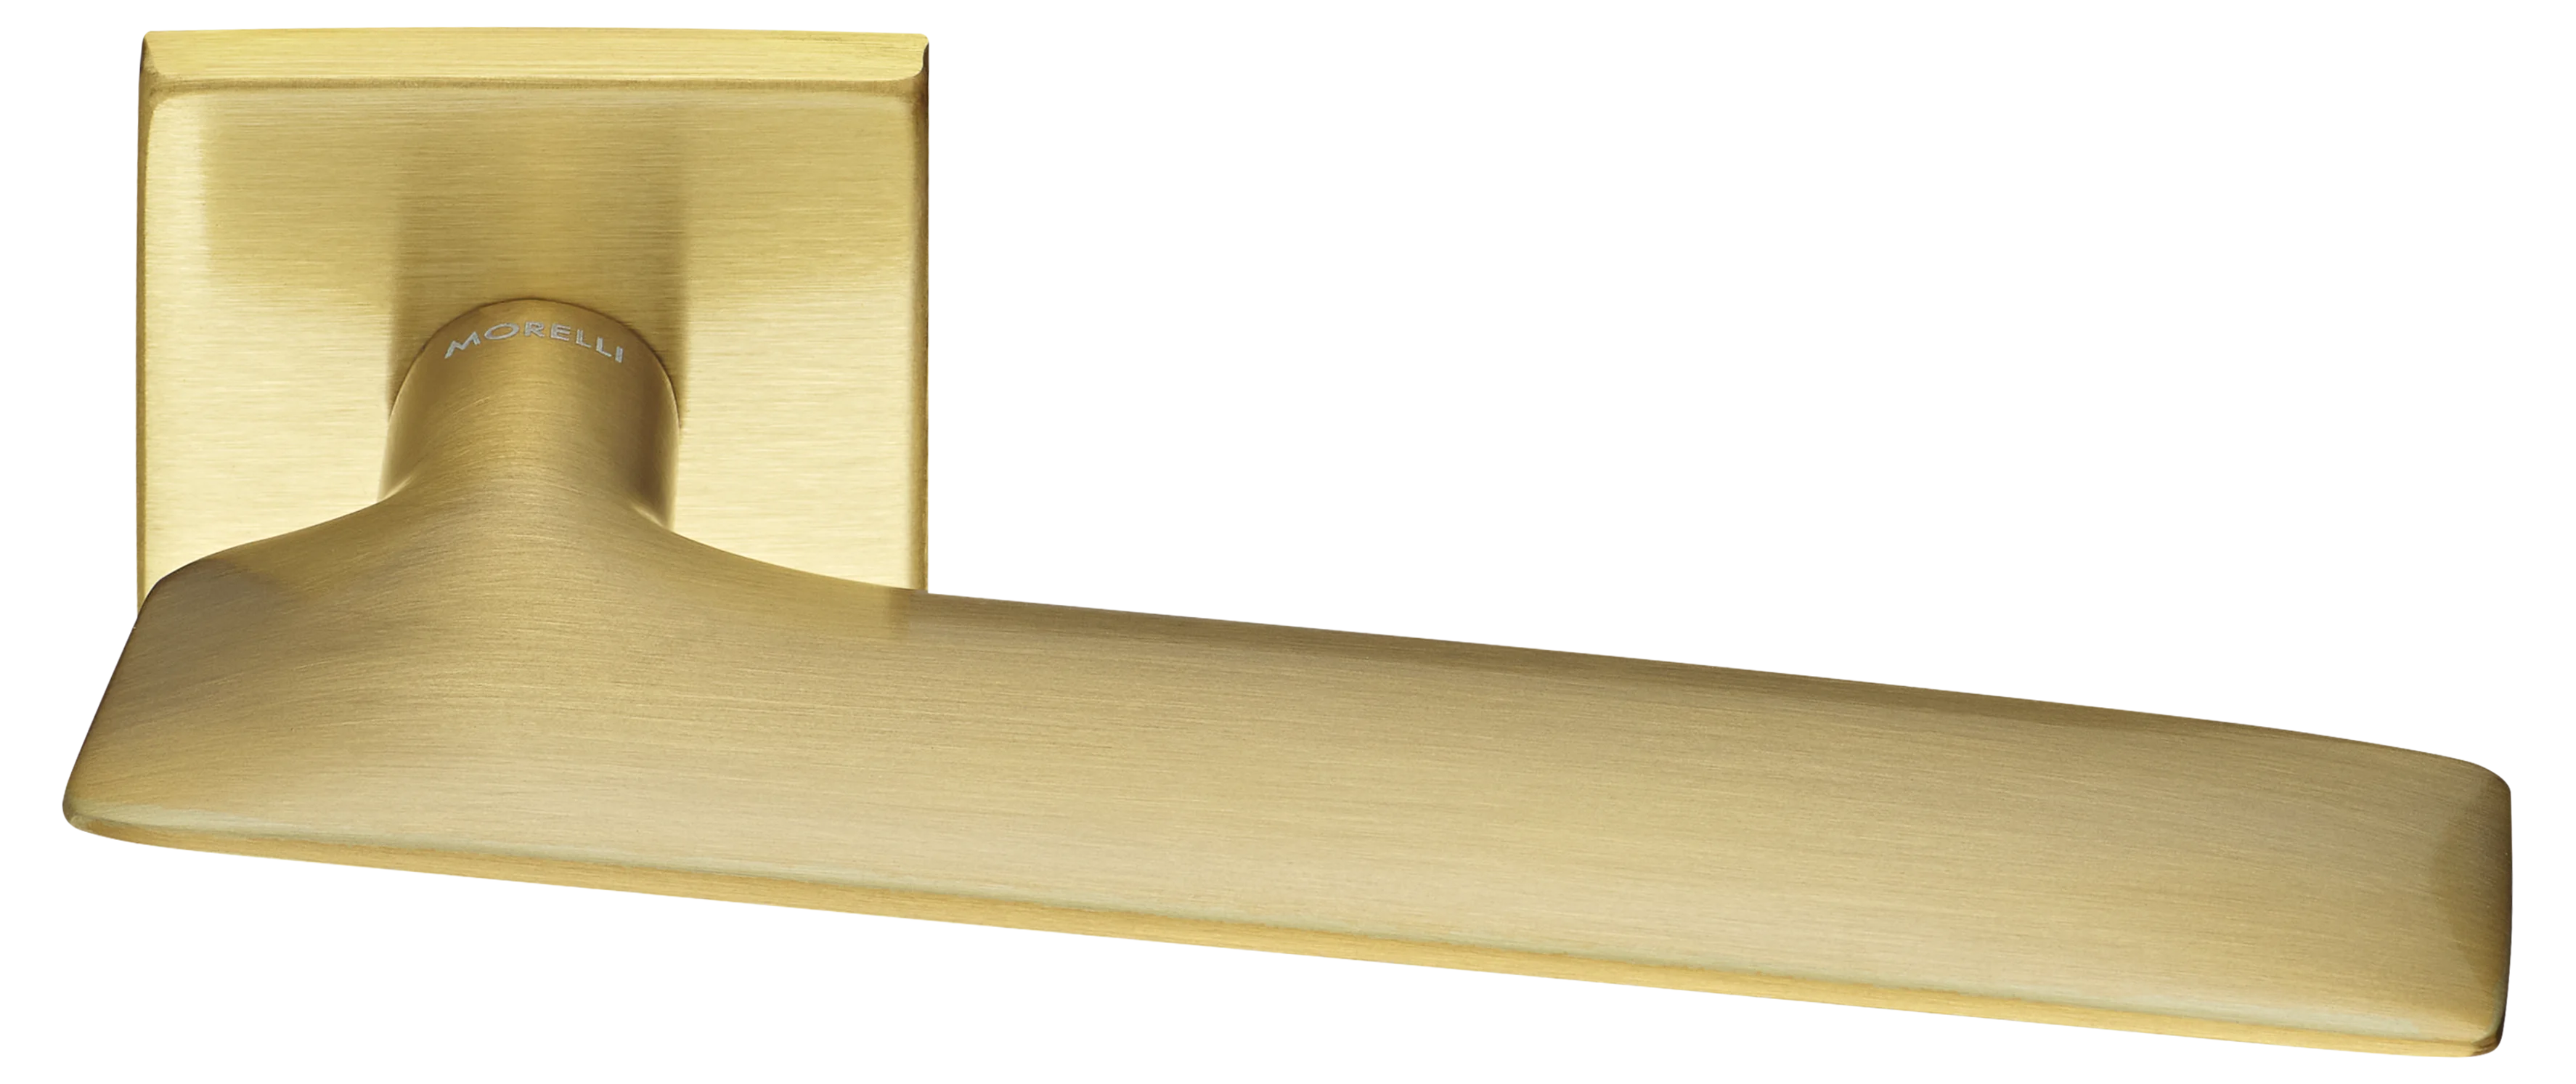 GALACTIC S5 OSA, ручка дверная, цвет -  матовое золото фото купить Москва